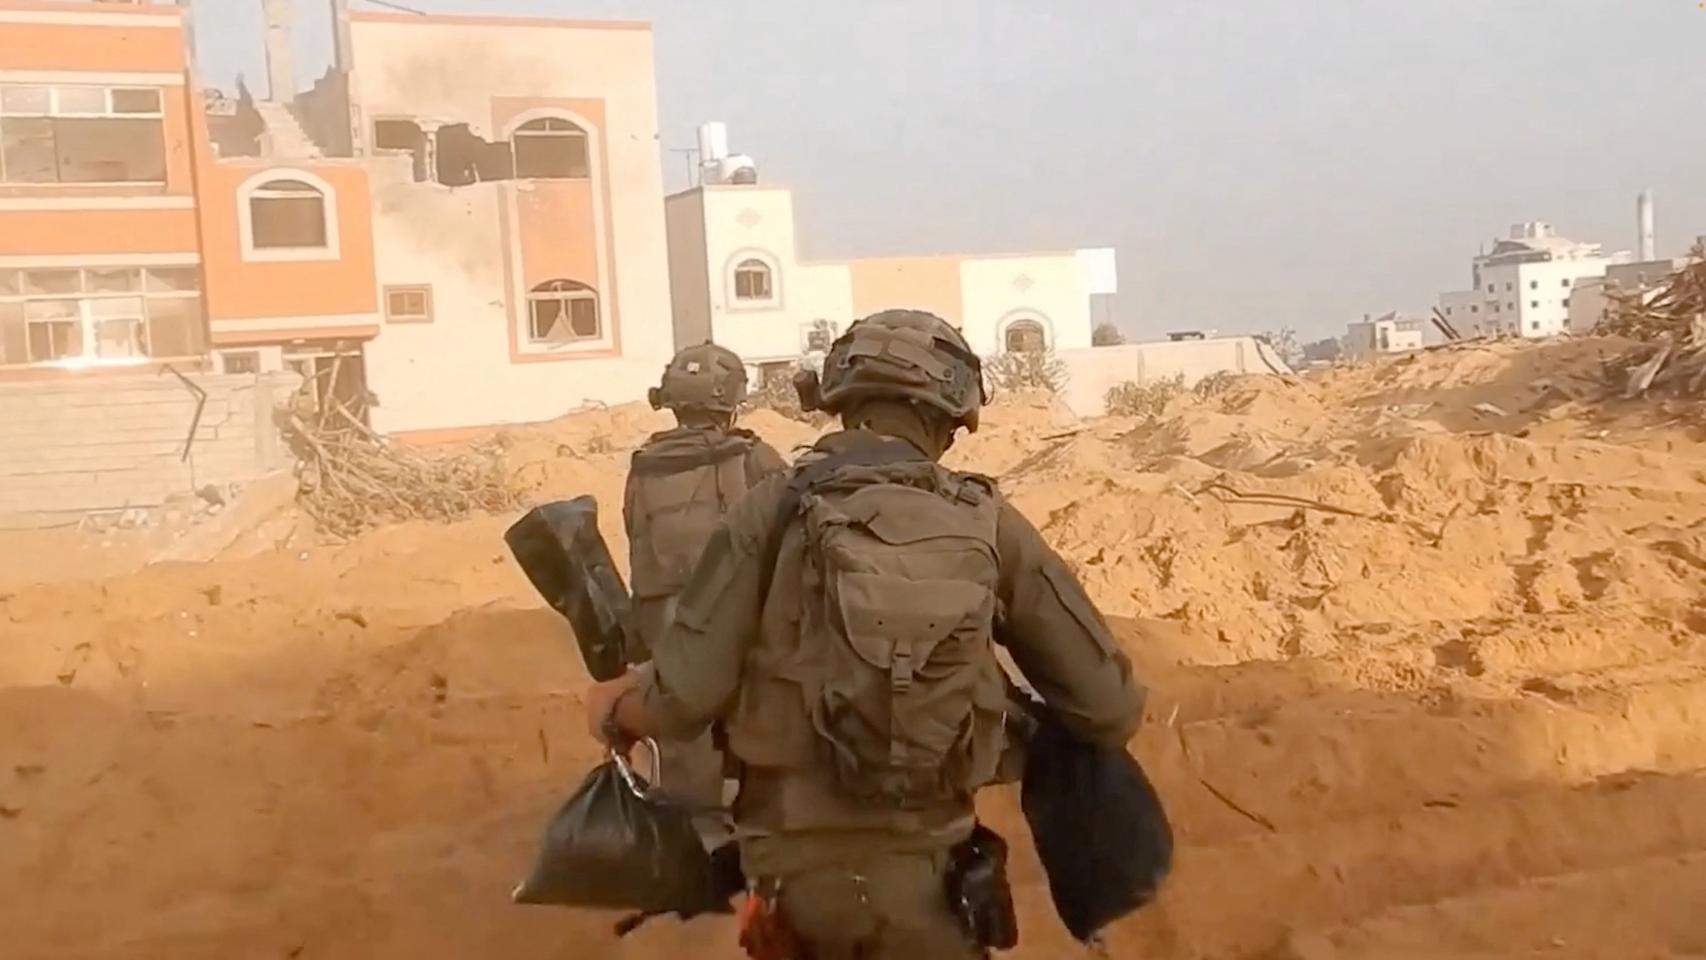 Los soldados israelíes operan en un lugar designado como Gaza.